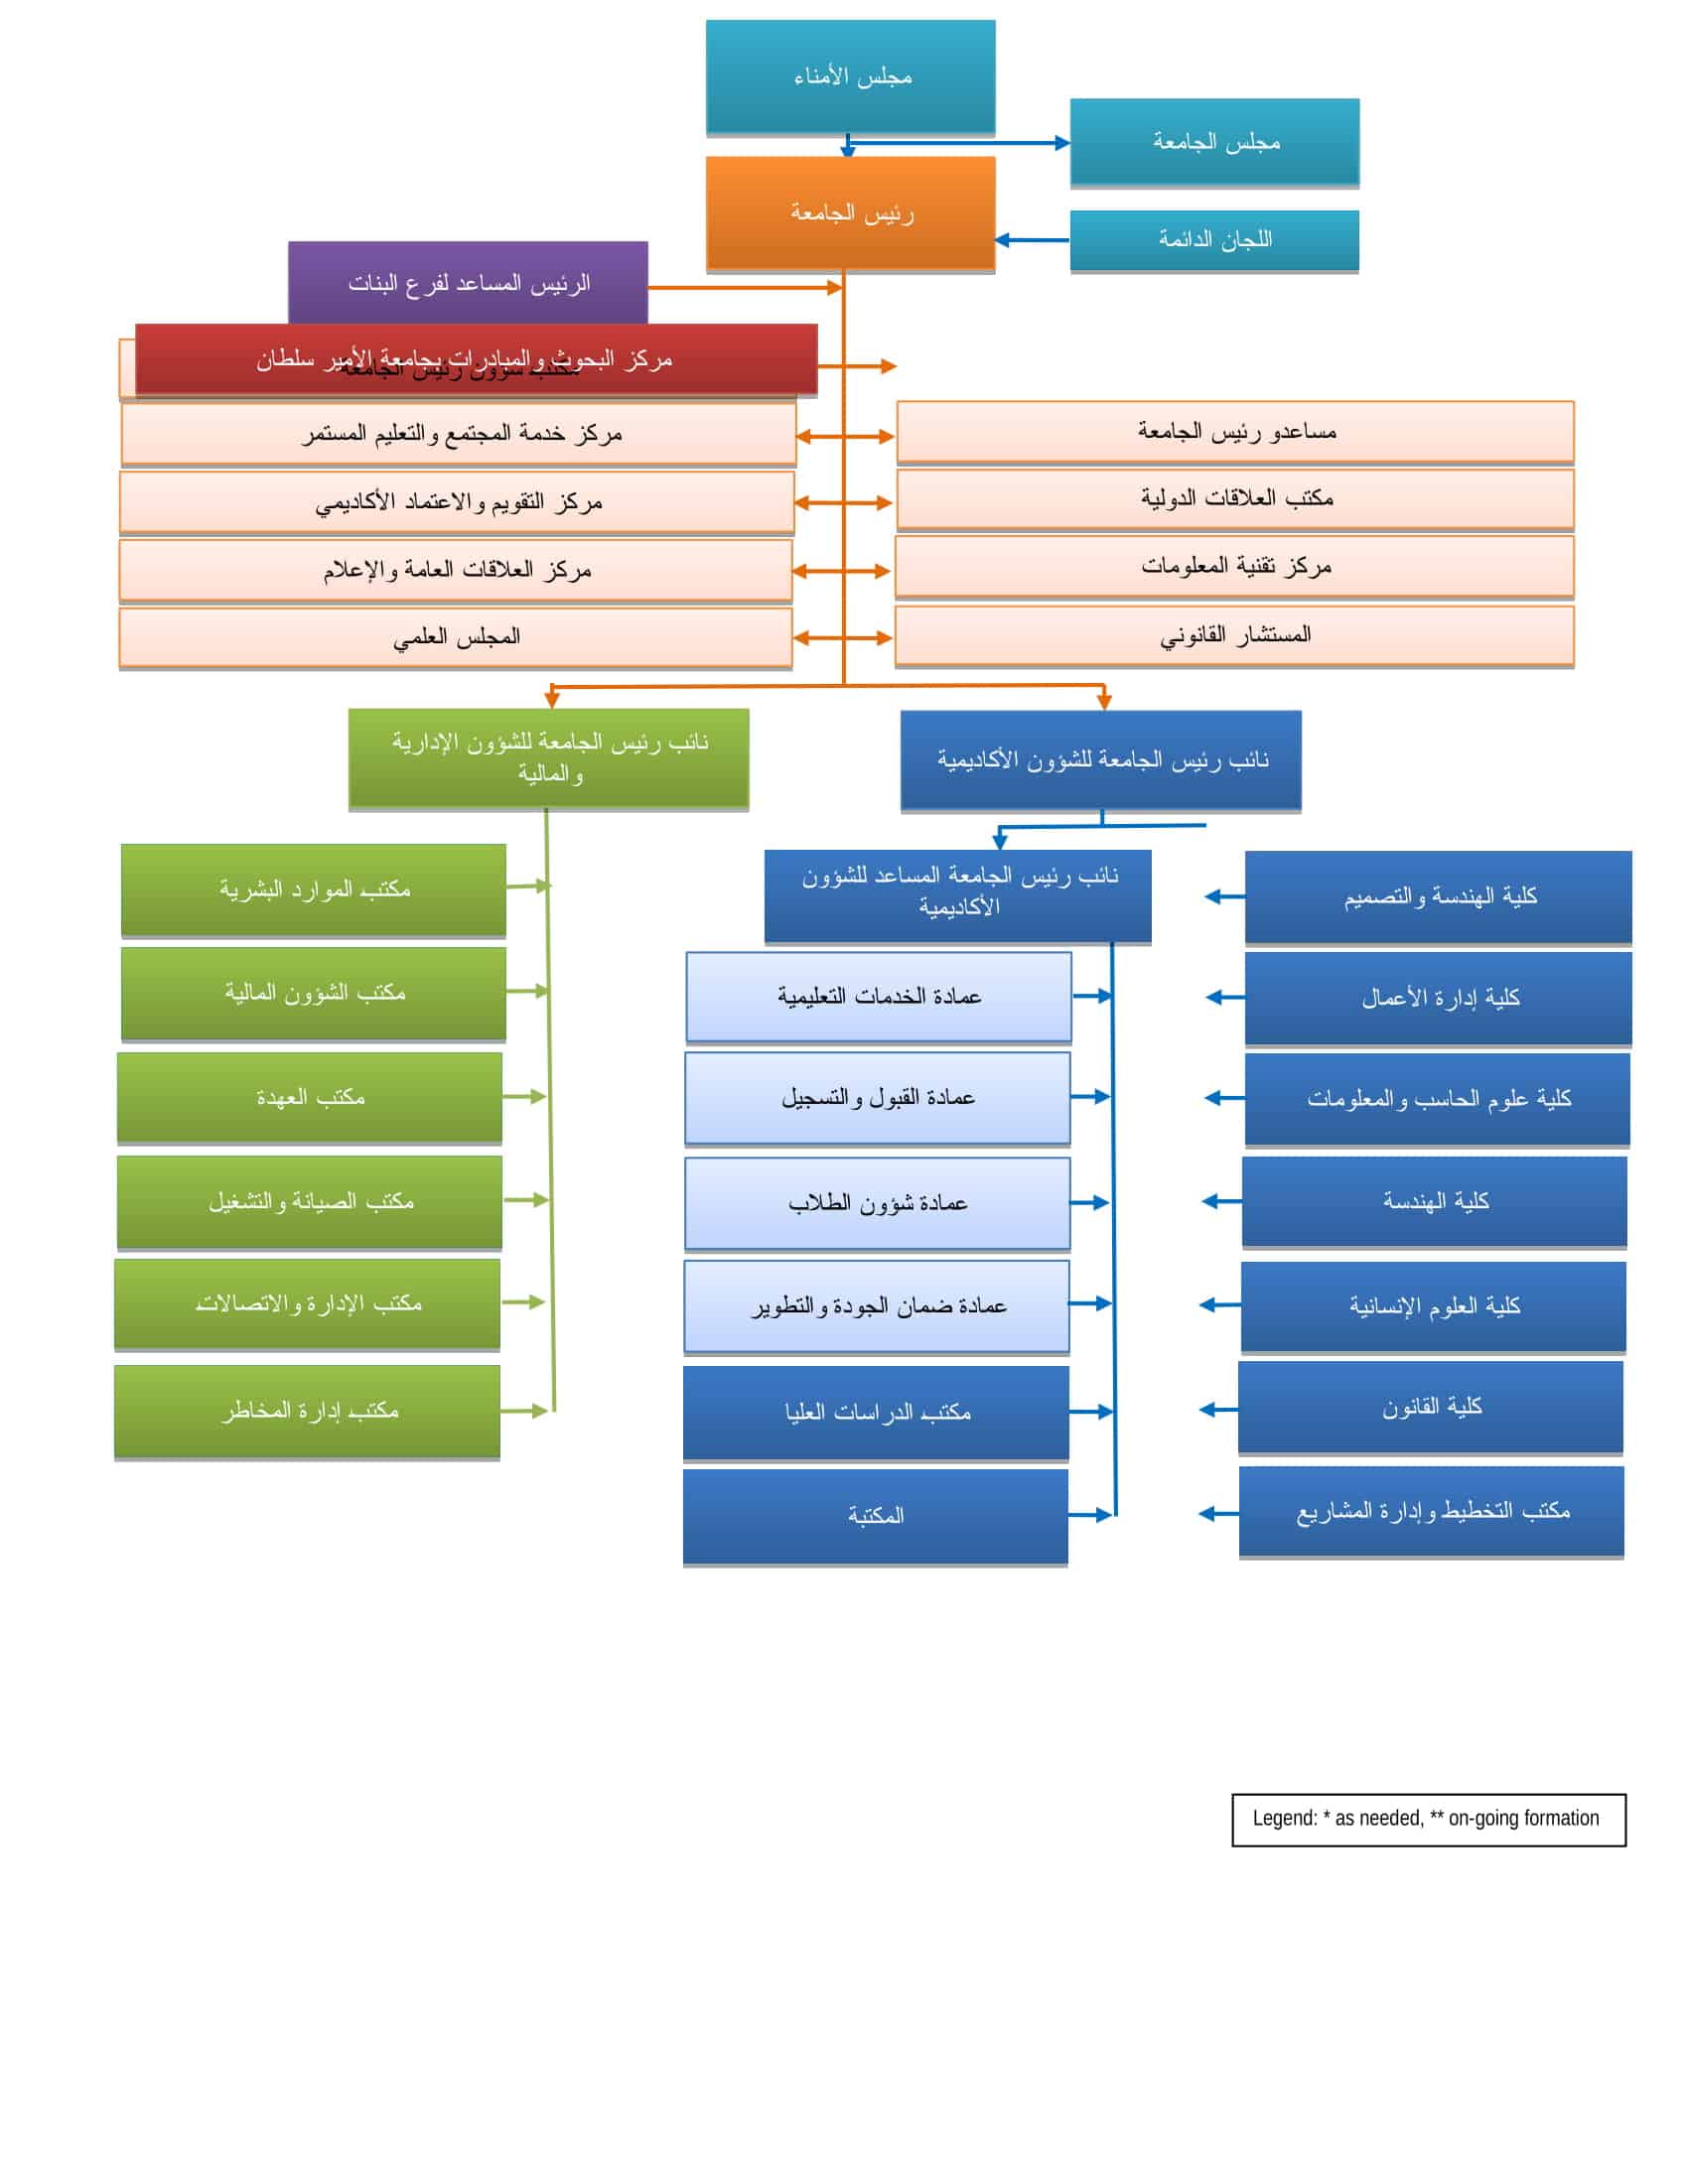 الهيكل التنظيمي لجامعة الأمير سلطان